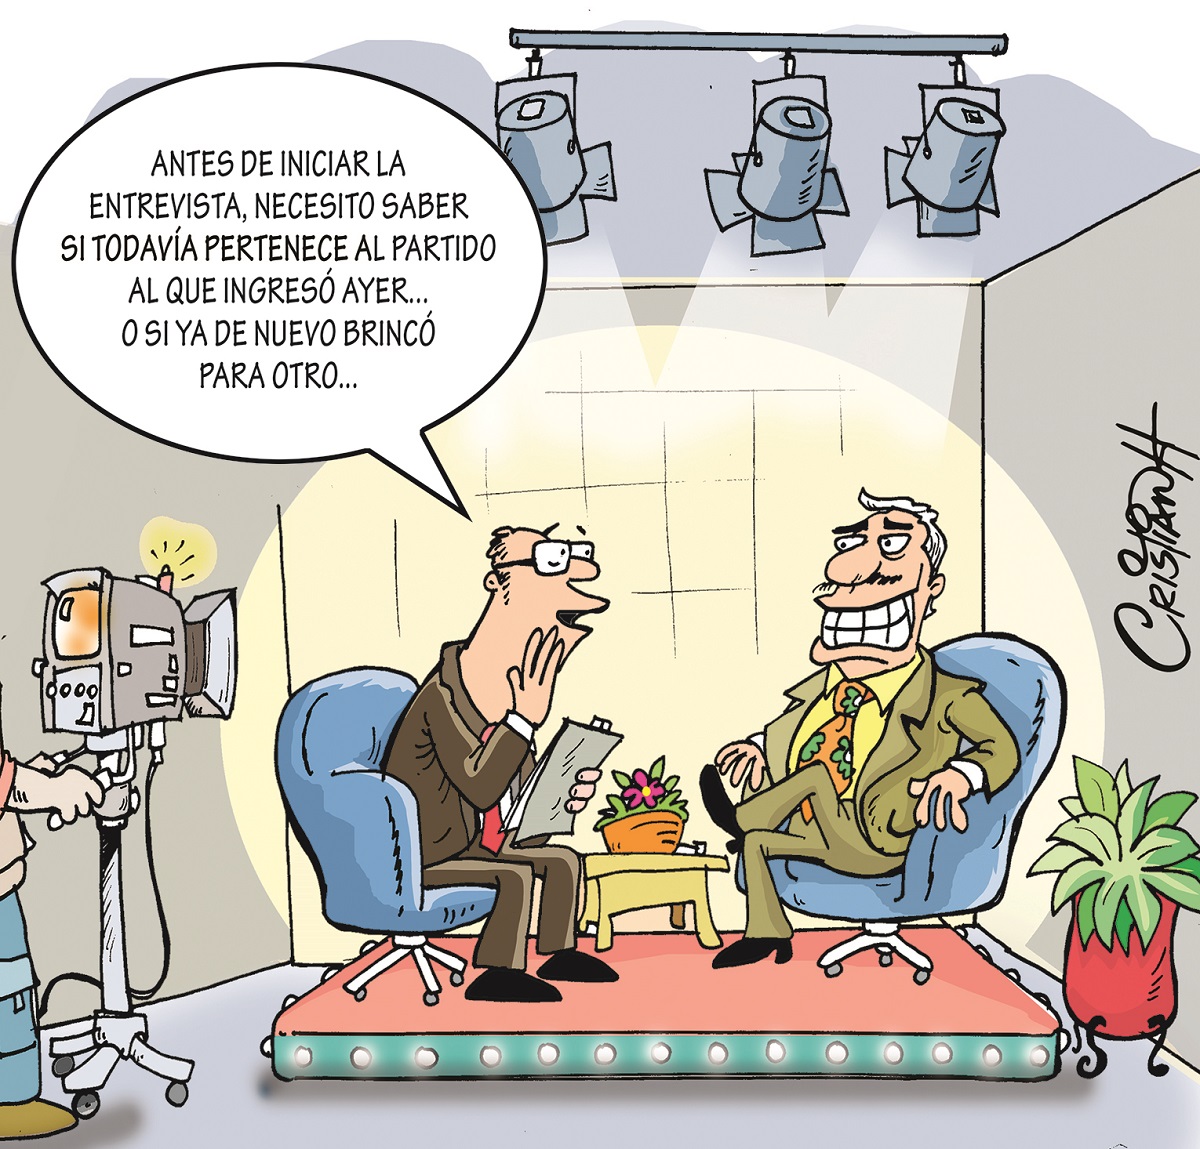 #Caricatura | El carrusel de la vida
Por: @criscaricaturas 
#PeriódicoElDía #CaricaturaElDía 
Más en: eldia.com.do/el-carrusel-de…